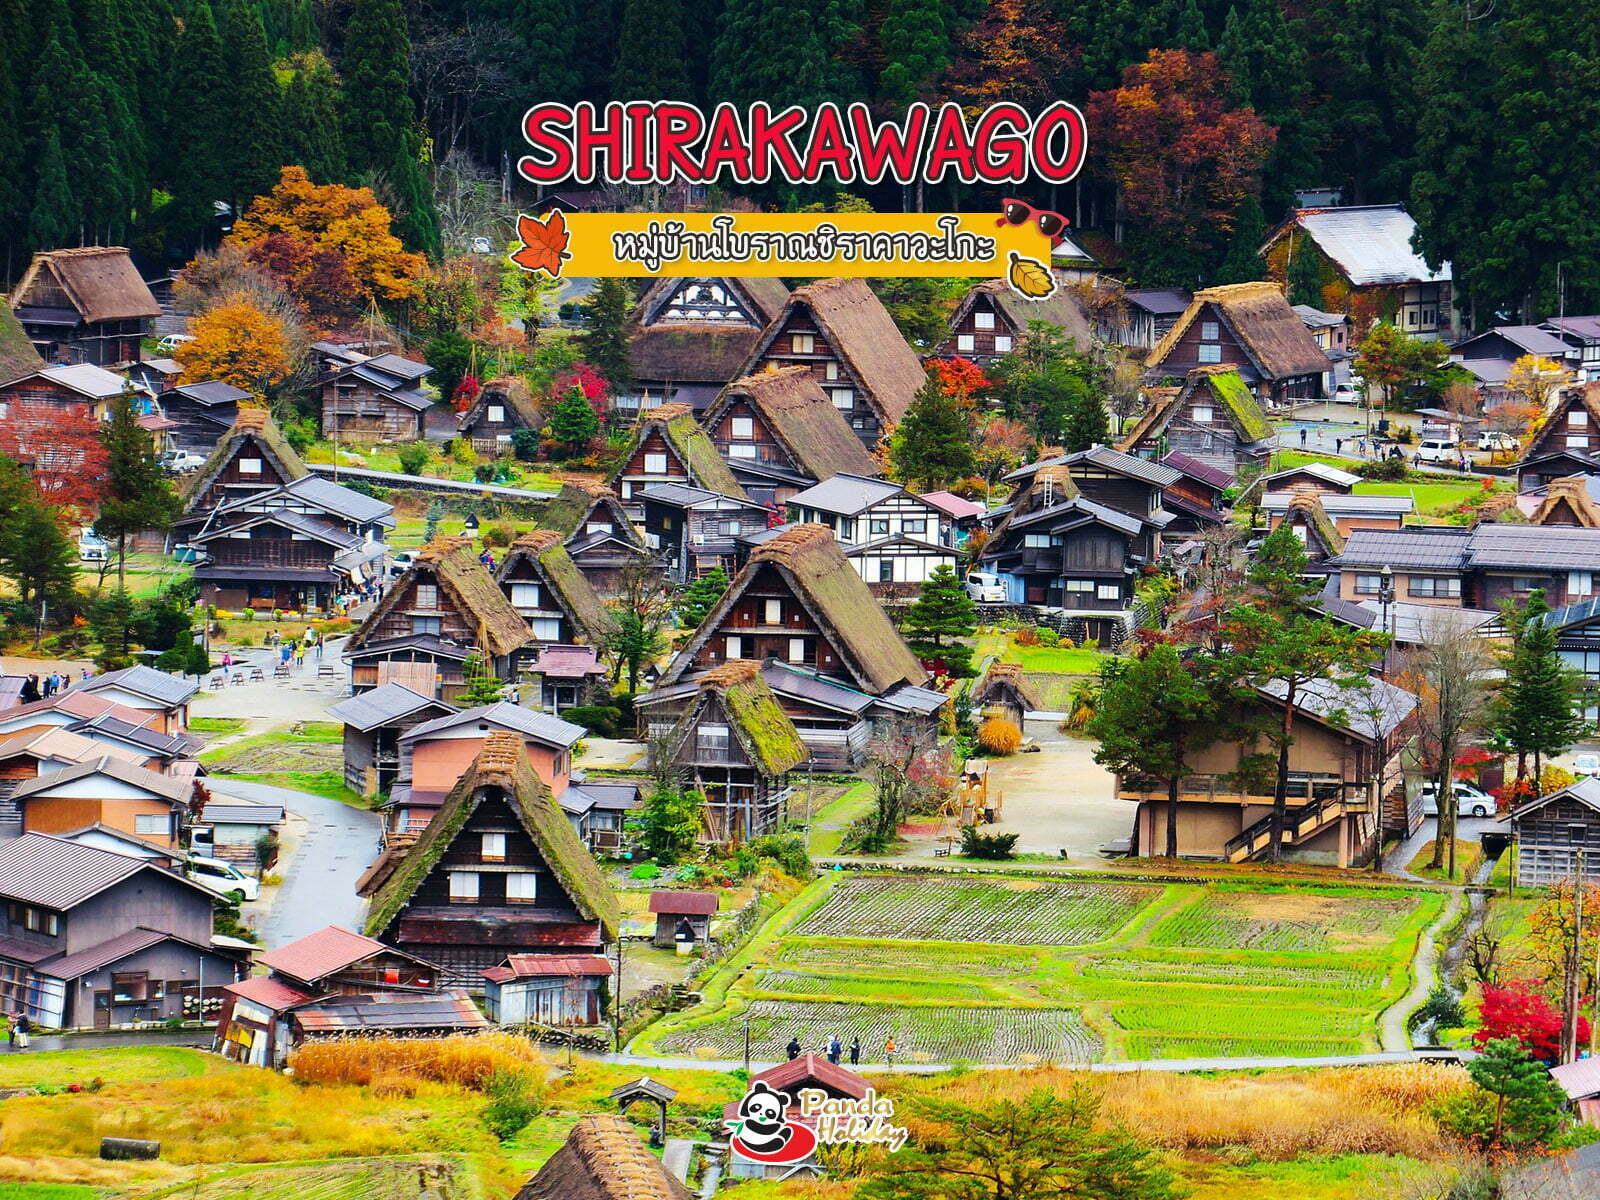 หมู่บ้านโบราณชิราคาวะโกะ ( shirakawago )